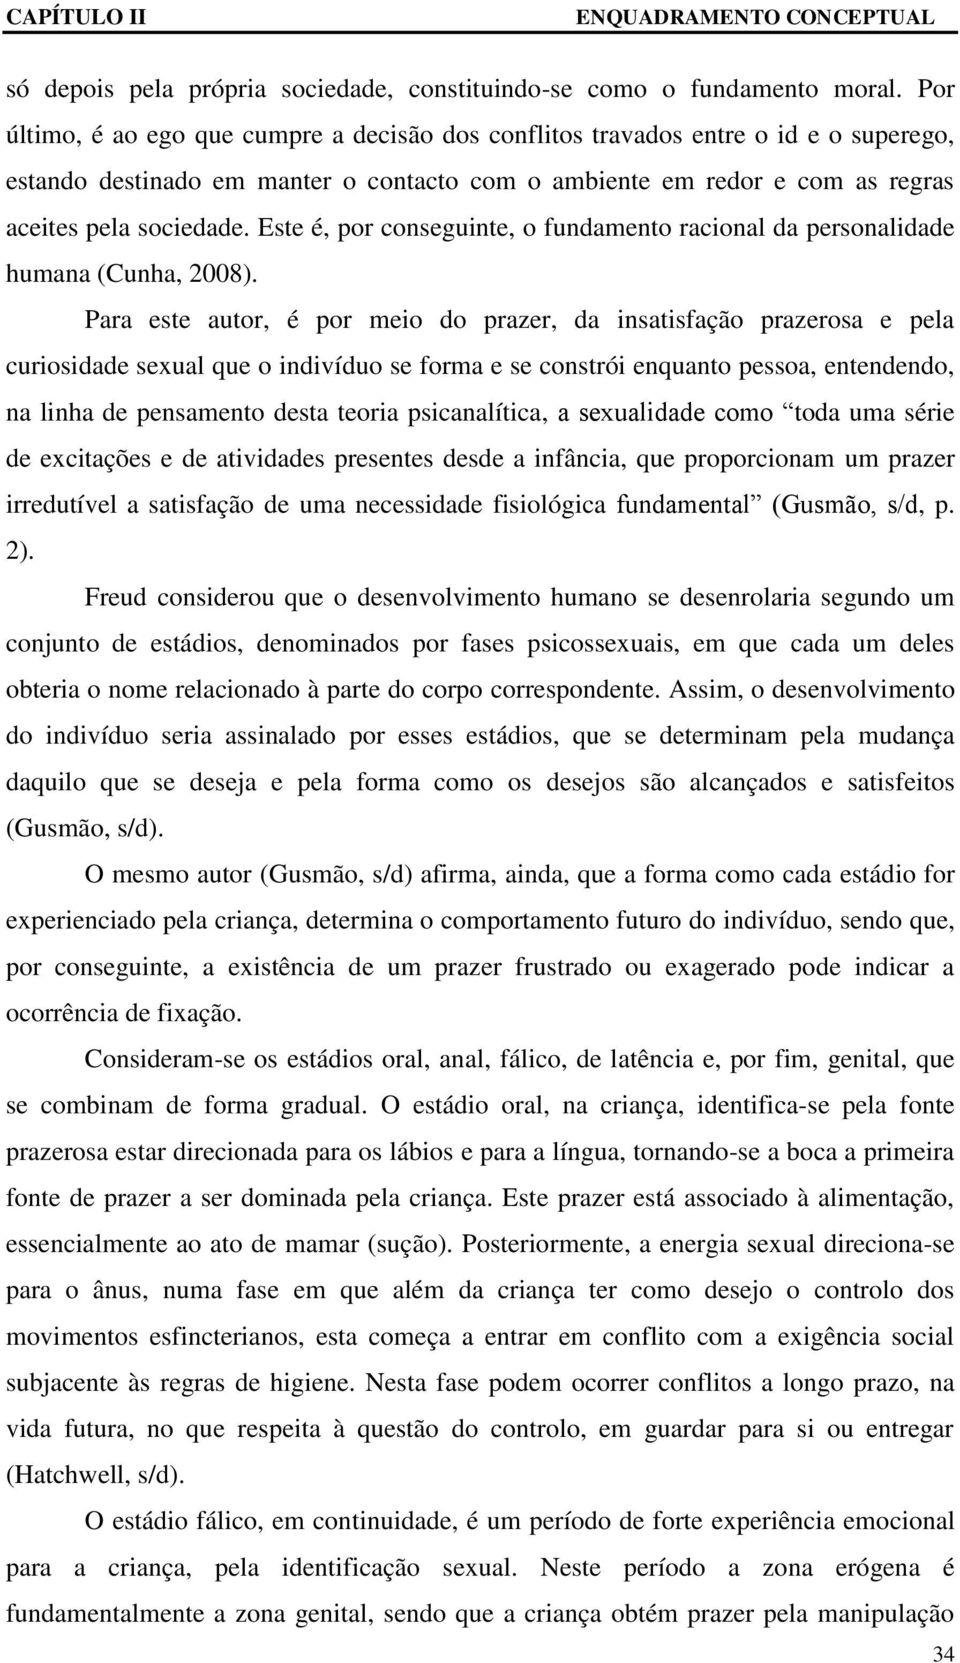 Este é, por conseguinte, o fundamento racional da personalidade humana (Cunha, 2008).